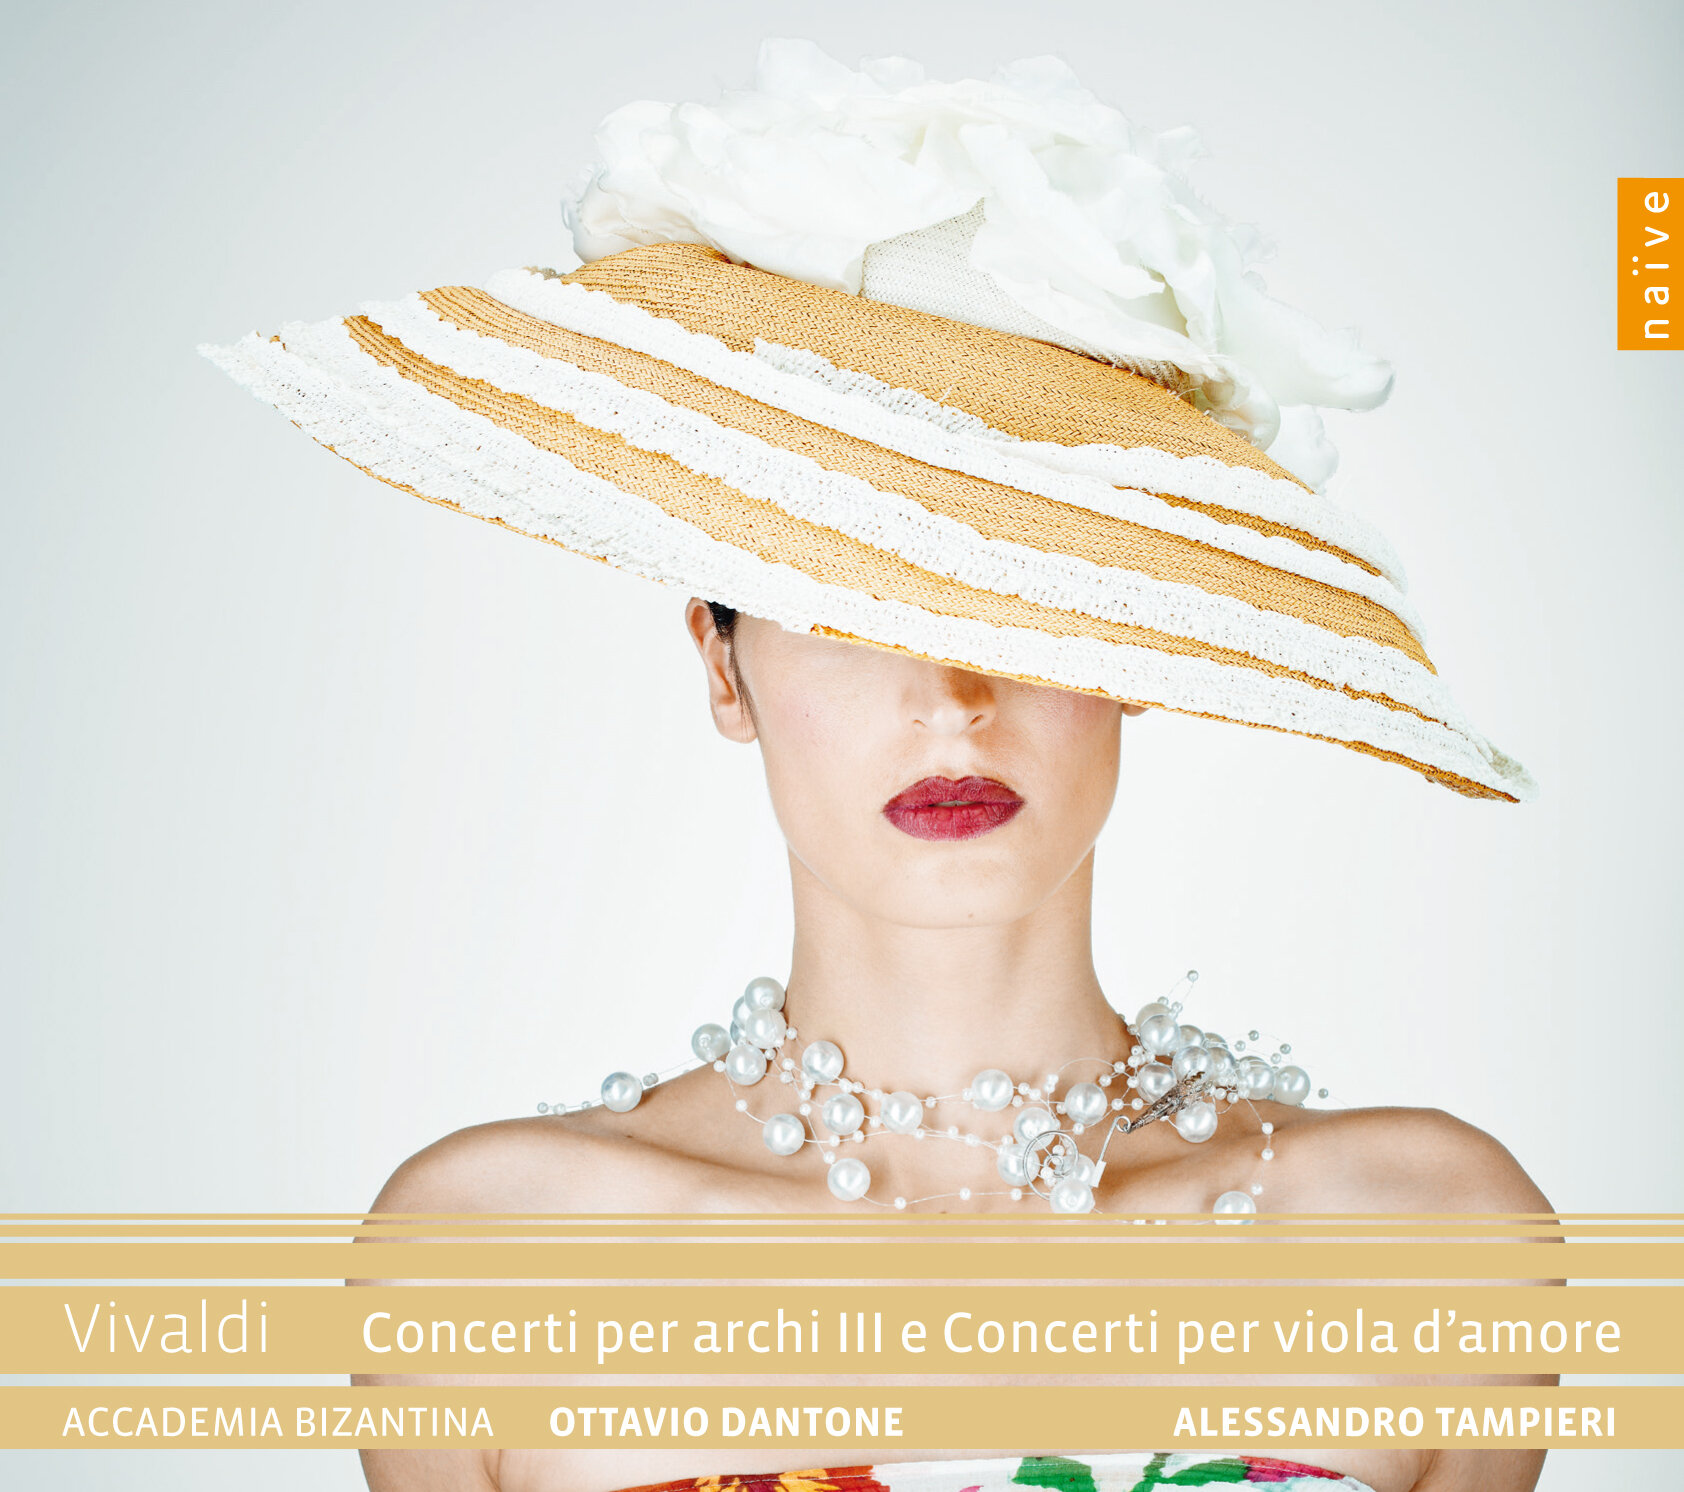 OP30570 Vivaldi Concerti per archi III e Concerti per viola d'amore - Accademia Bizantina.jpg